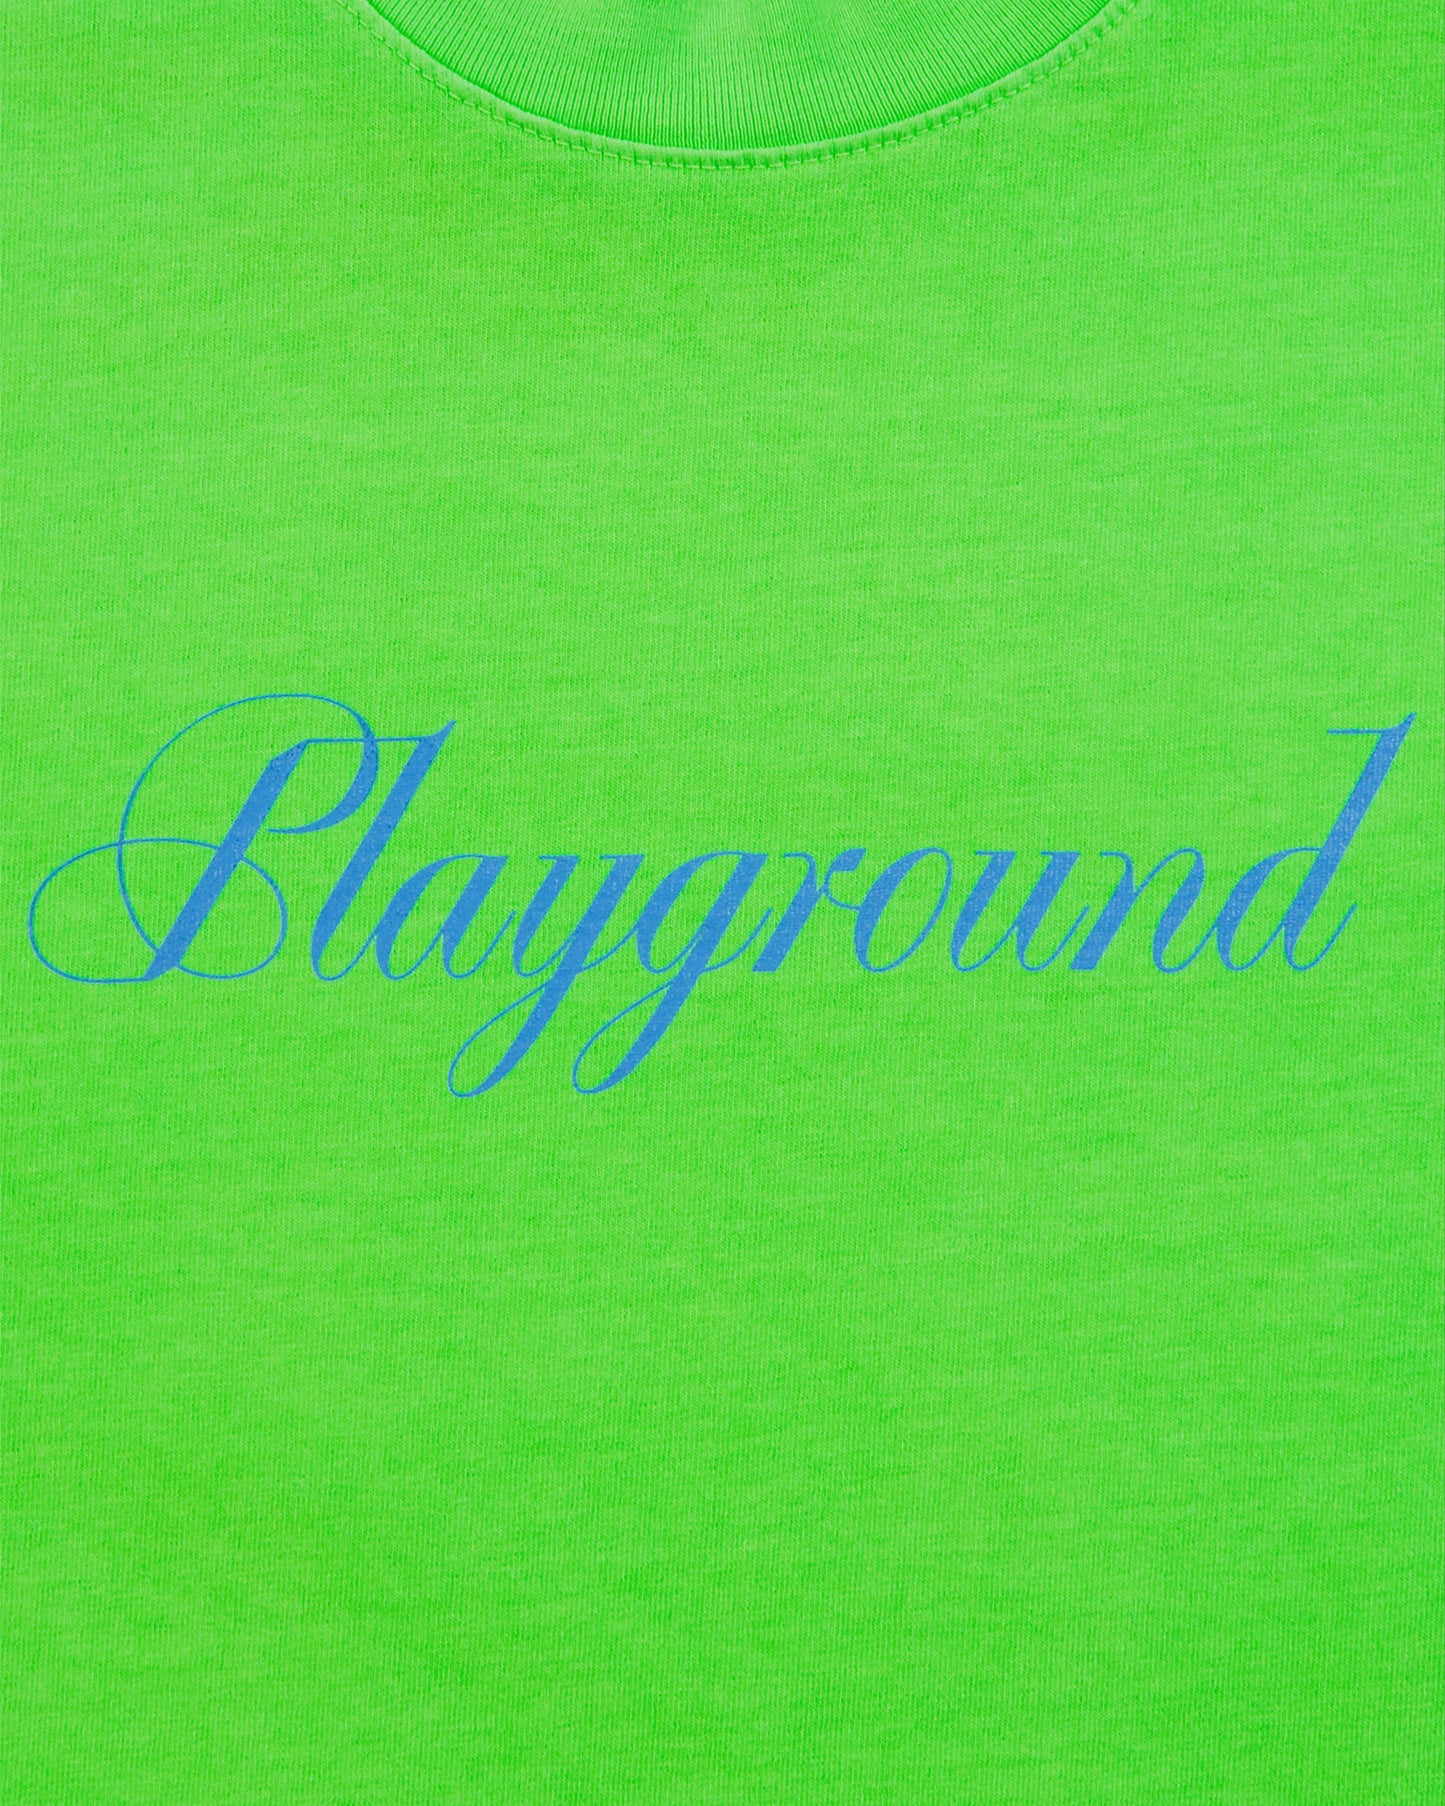 Playground Essential T-Shirt - Neon Green